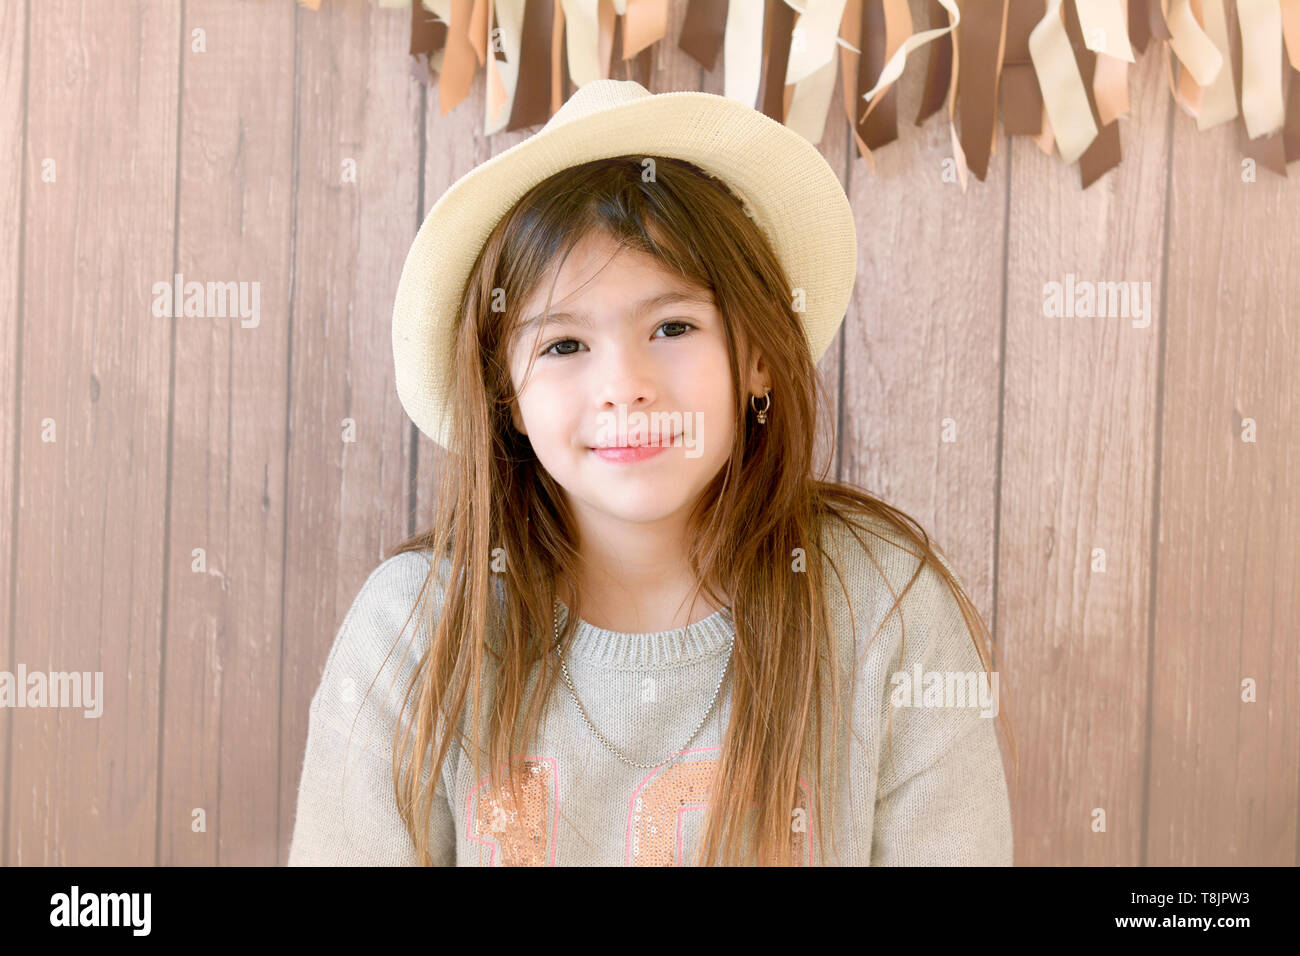 Pretty girl in studio sessione fotografica con hat Foto Stock